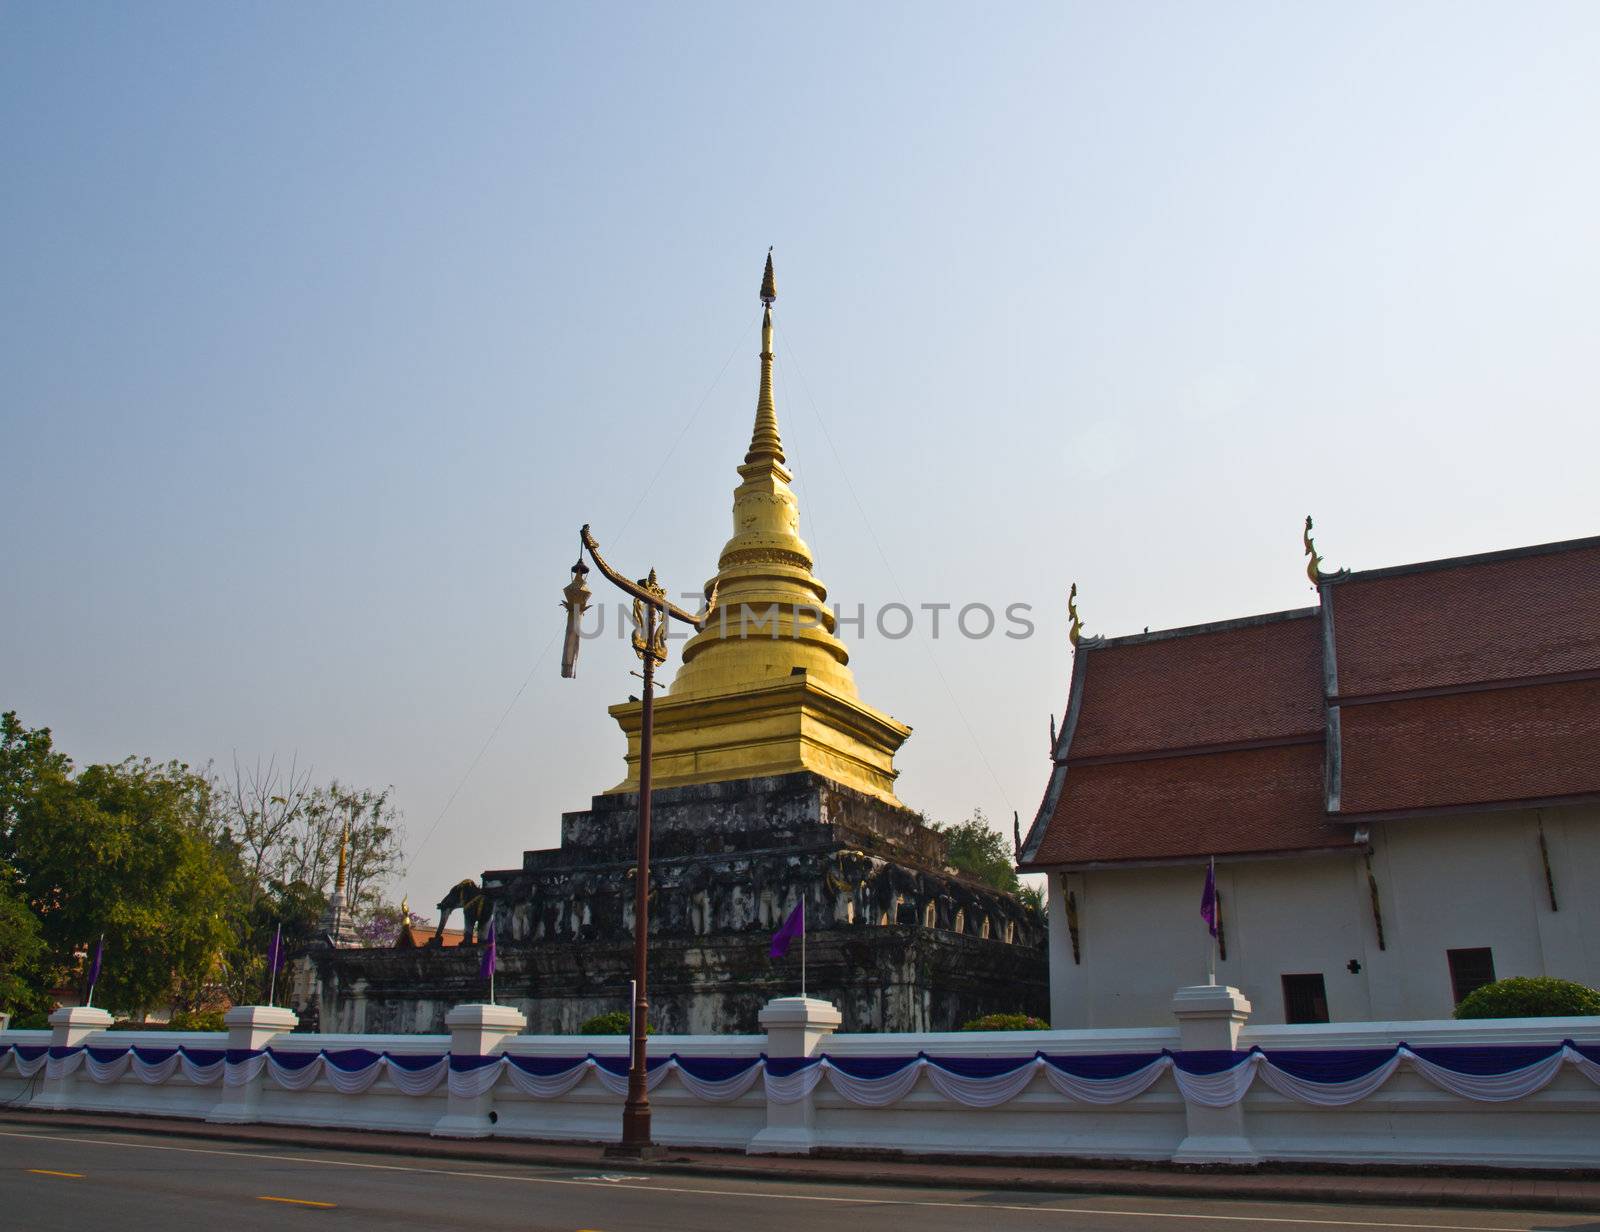 Golden pagoda and vihara, Wat Phra That chaeng kam, Nan Thailand